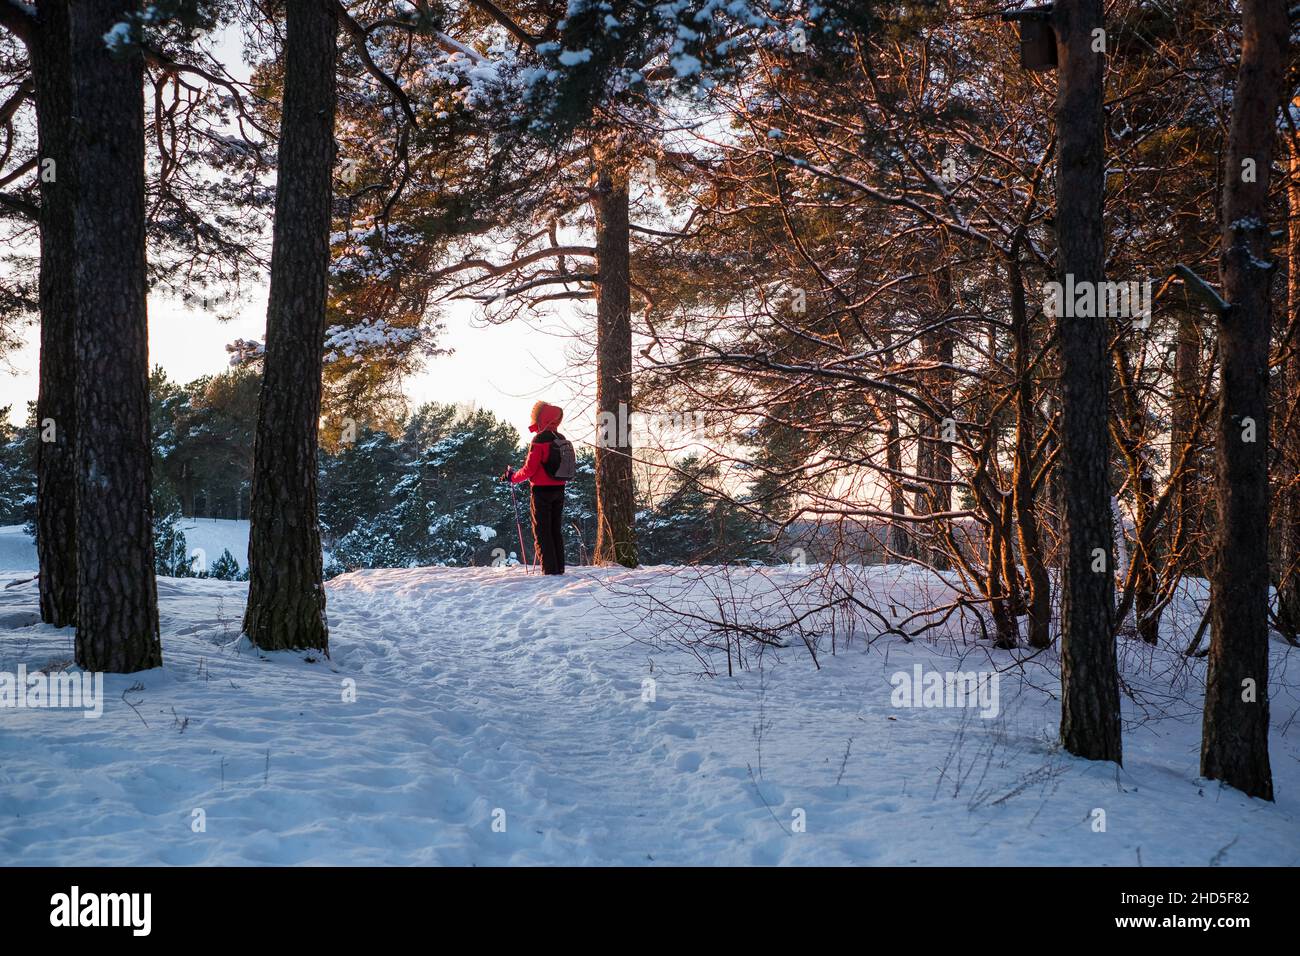 Femme skiant sur une colline enneigée en Estonie pendant une belle journée d'hiver.Vacances d'hiver destination touristique. Banque D'Images